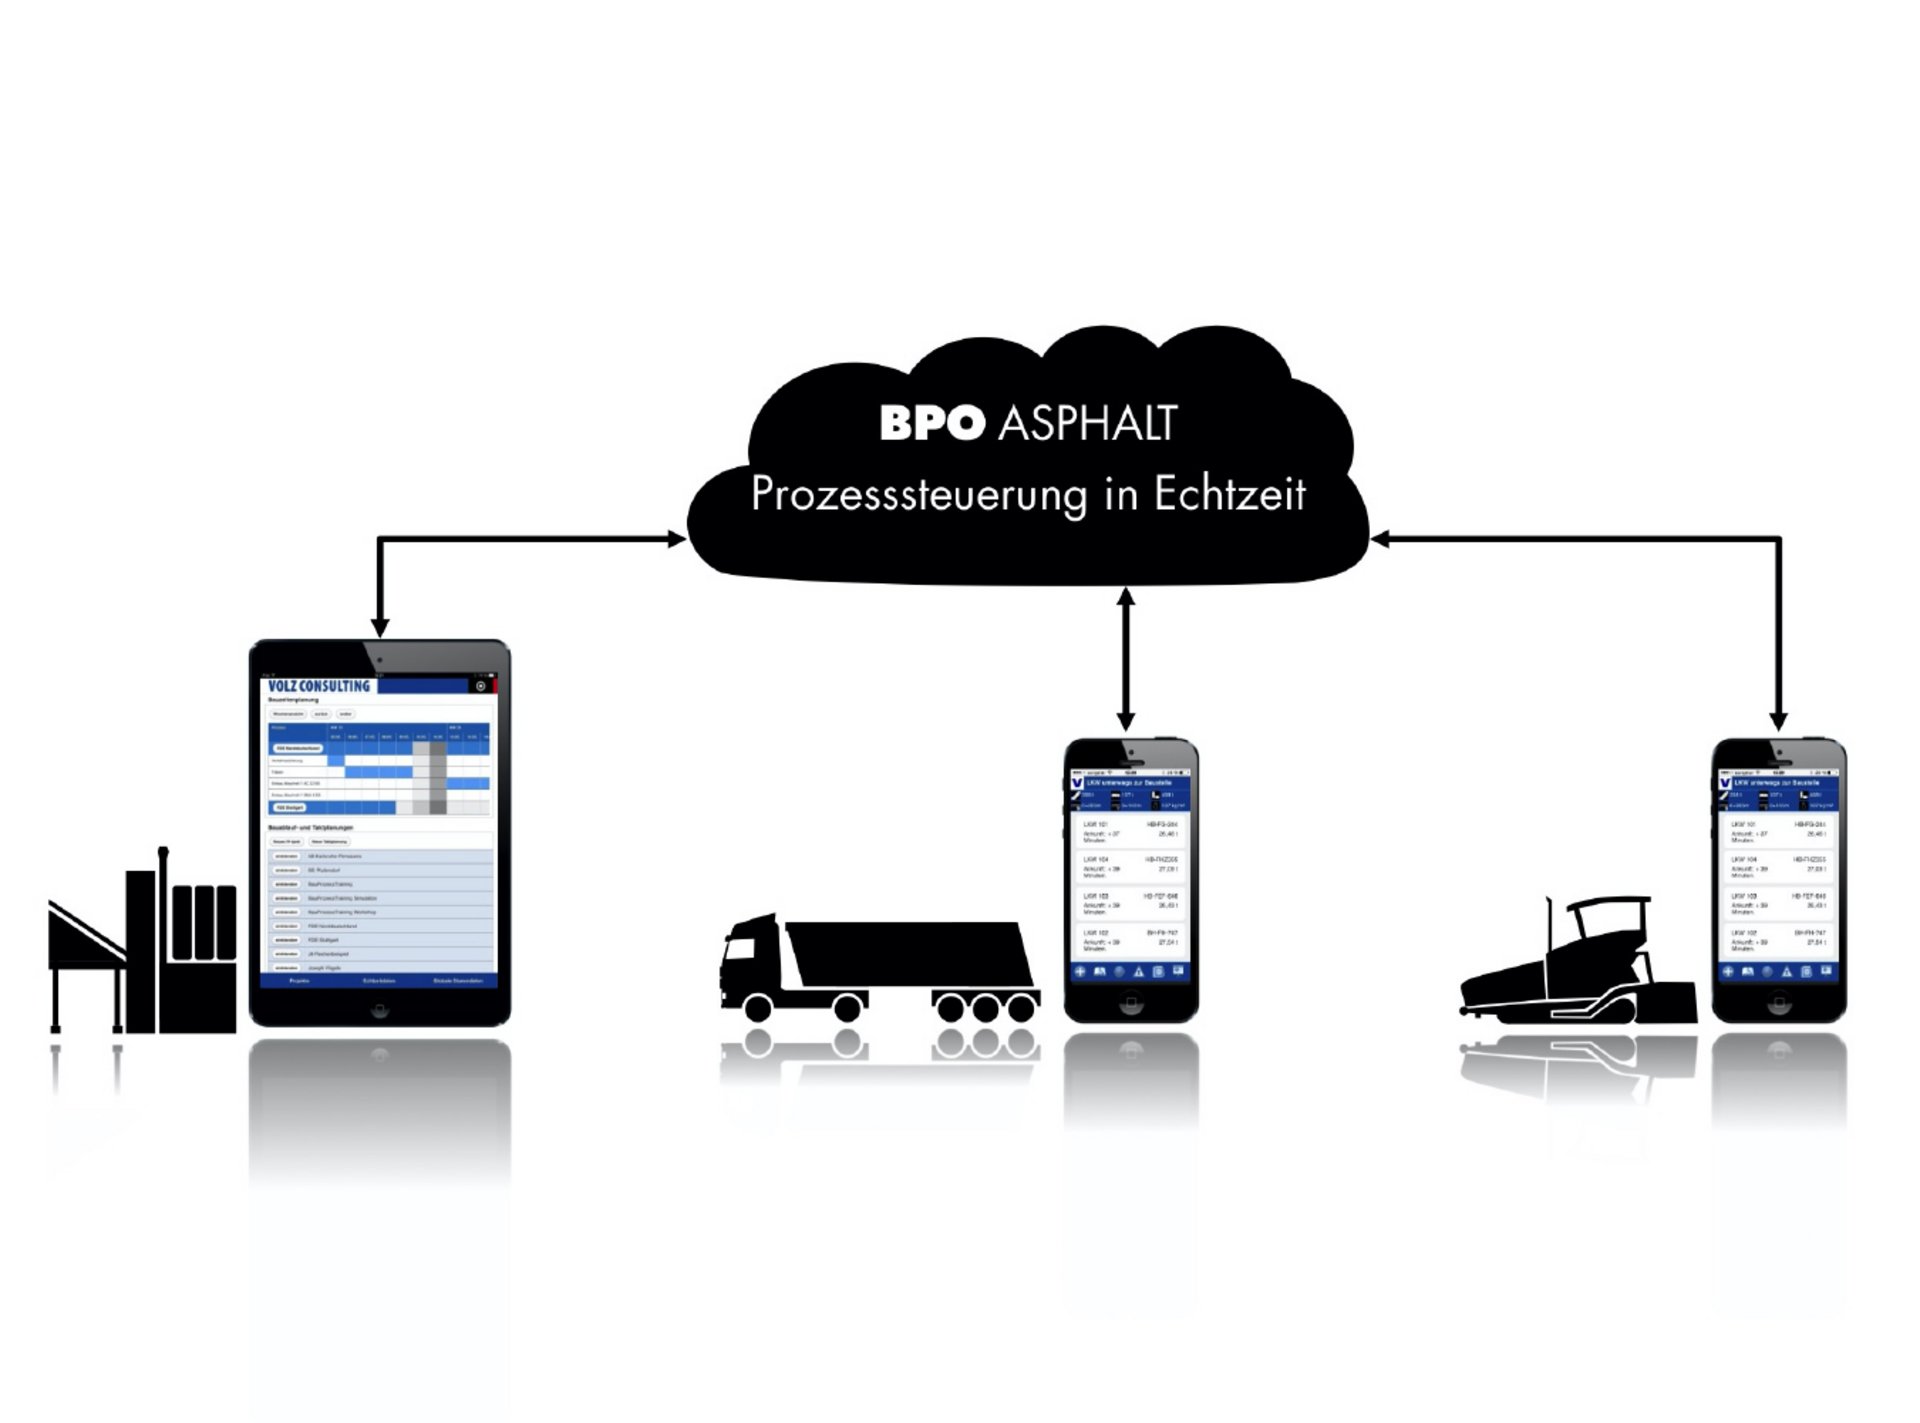 Visalisierung Verbindung Tablets und Smartphones, Aufschrift "BPO Asphalt Prozesssteuerung in Echtzeit"